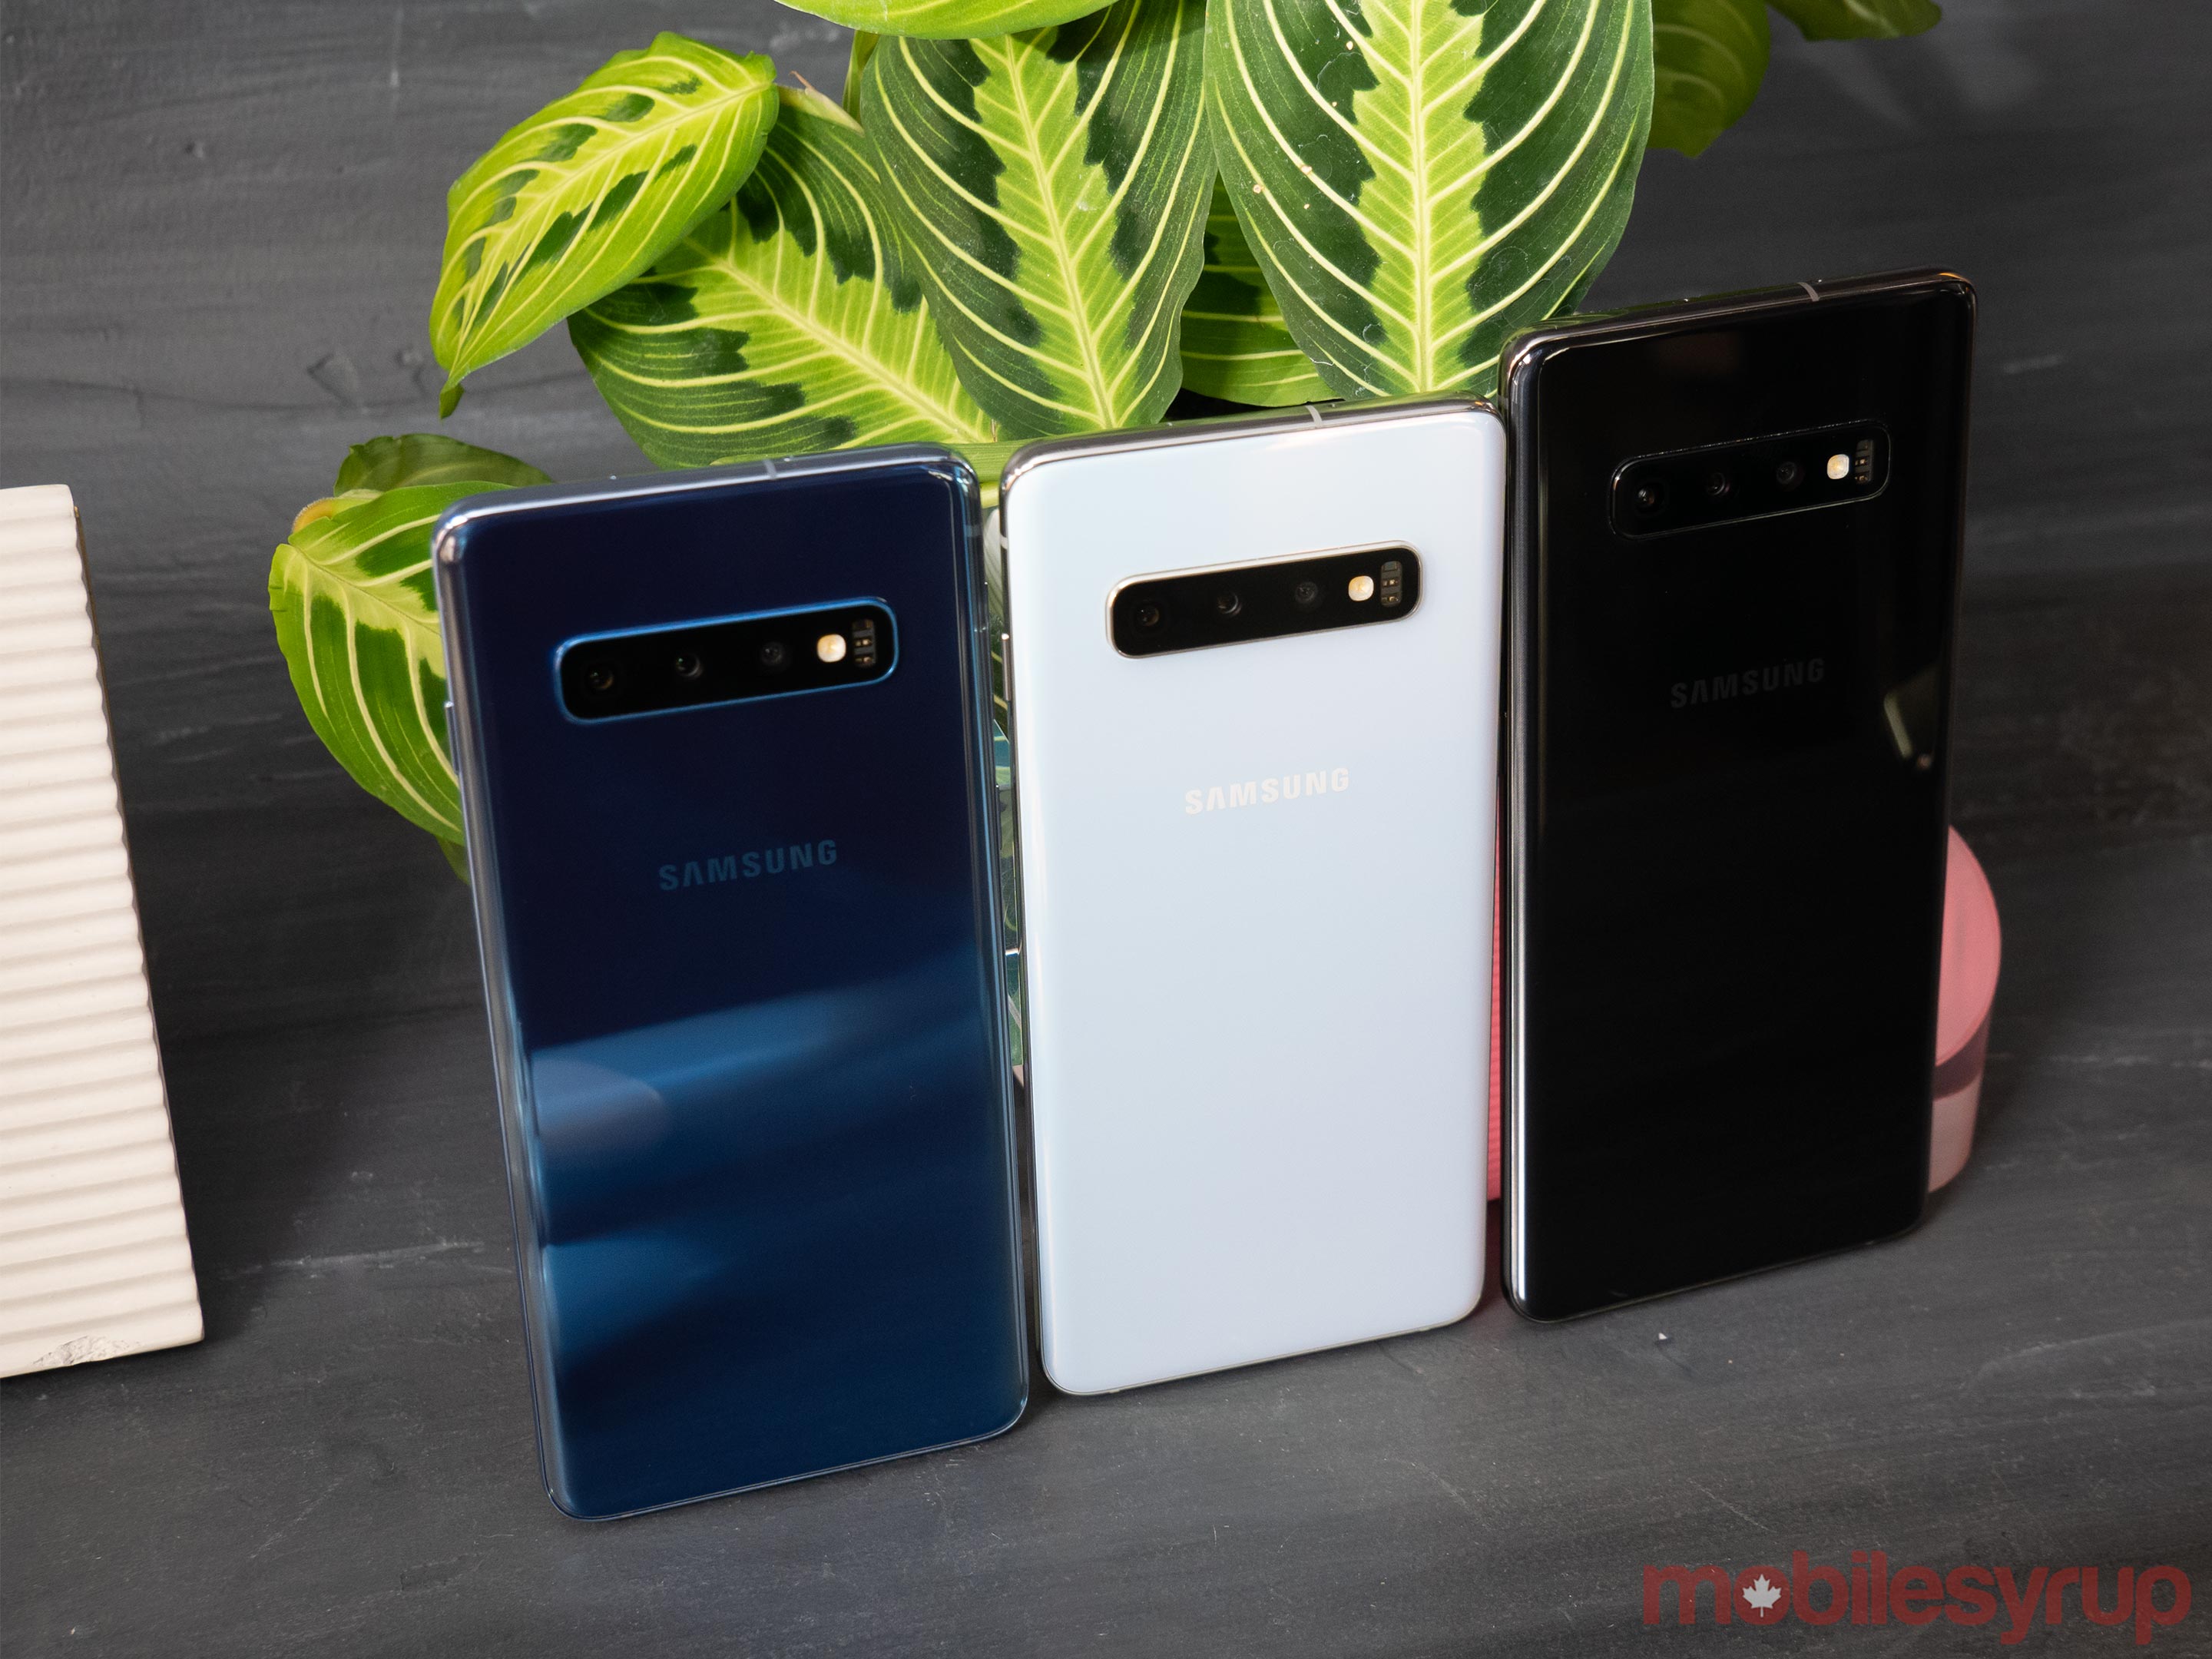 Samsung Galaxy S10e, S10, and S10+